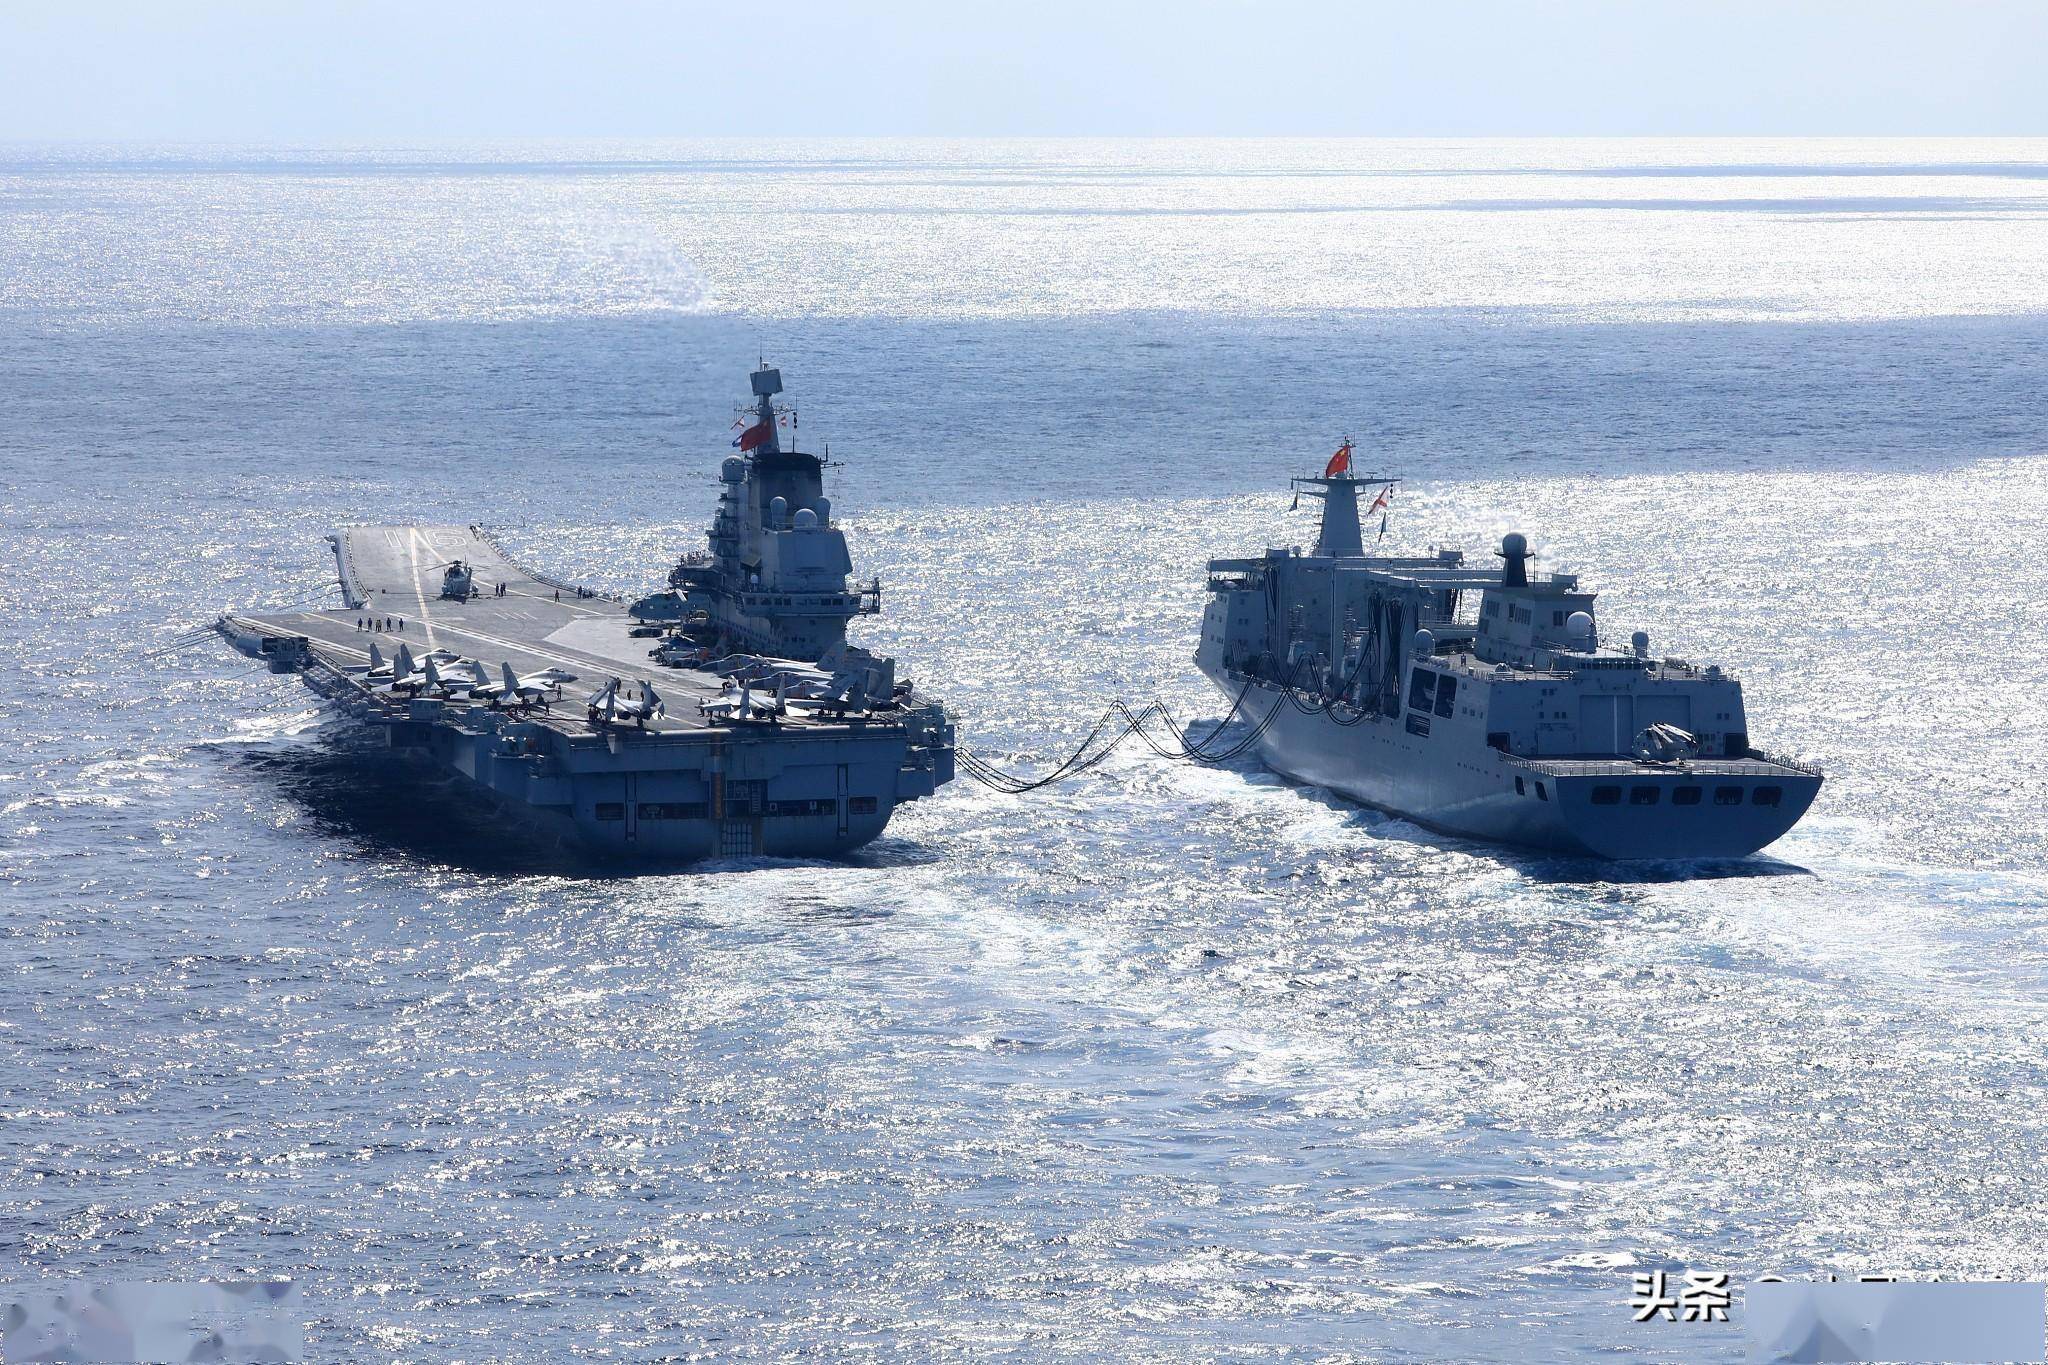 中国在2045年将打造12艘航母组建的超级舰队,这跟中国海军三大目标很